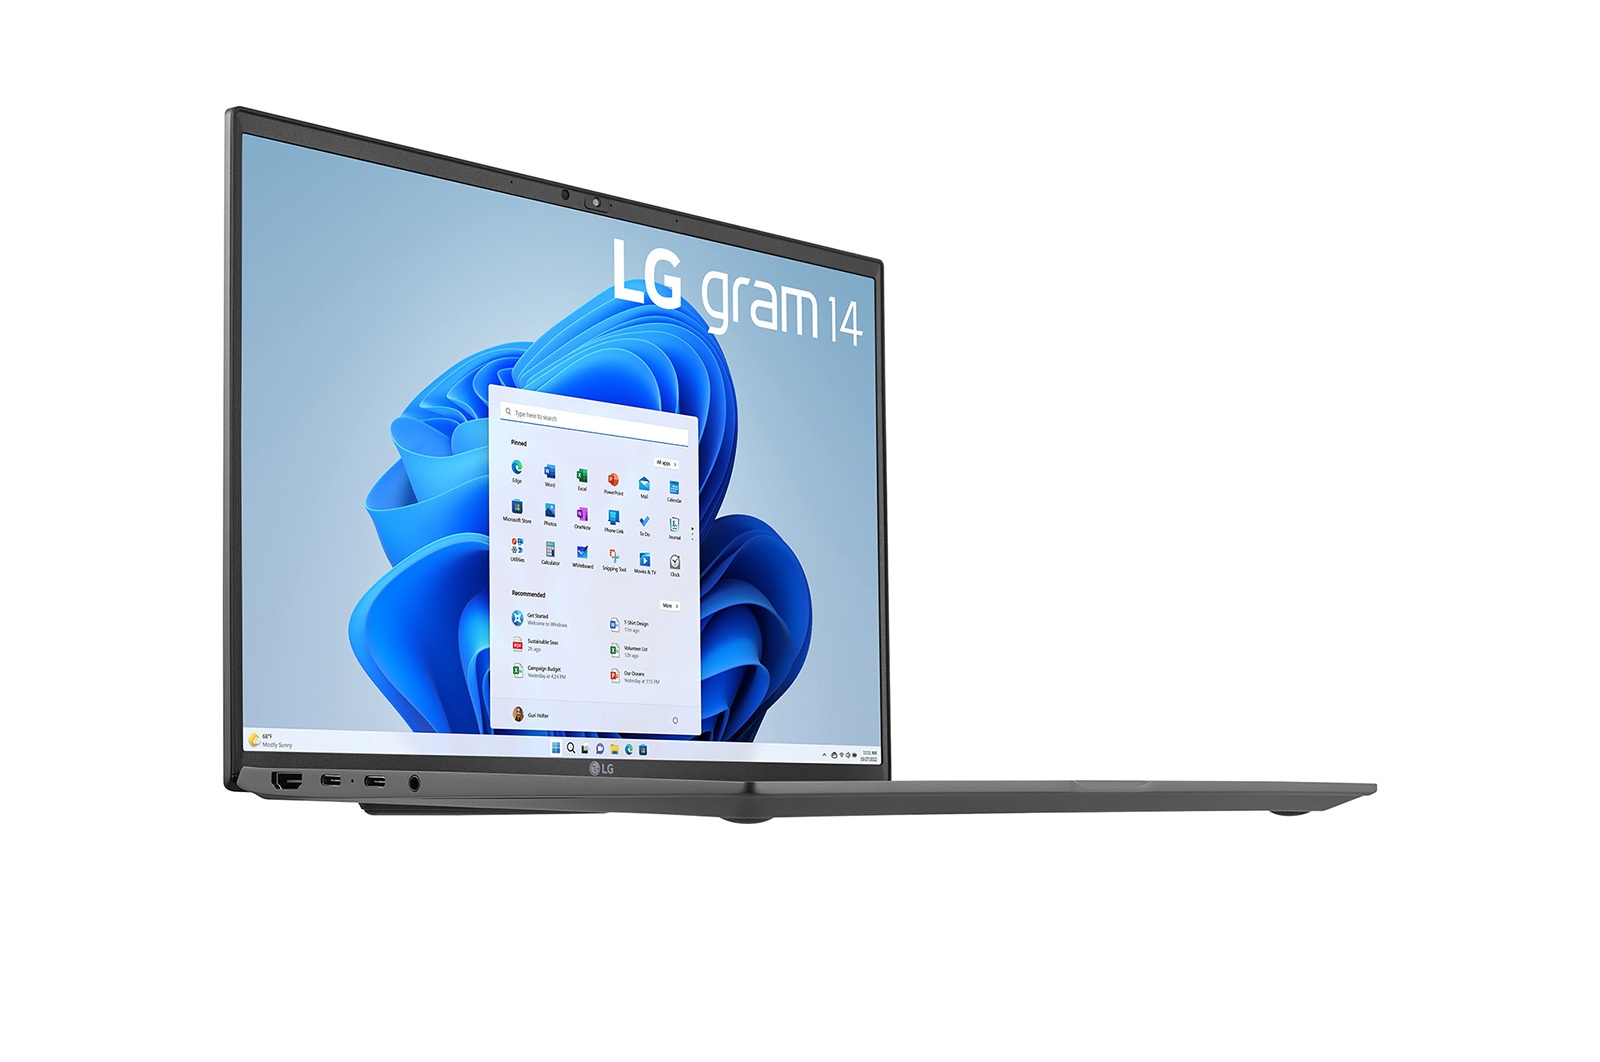 LG gram 14'' 輕贏隨型極致輕薄筆電Pro - 沉靜灰(i5) (商用) | LG 台灣